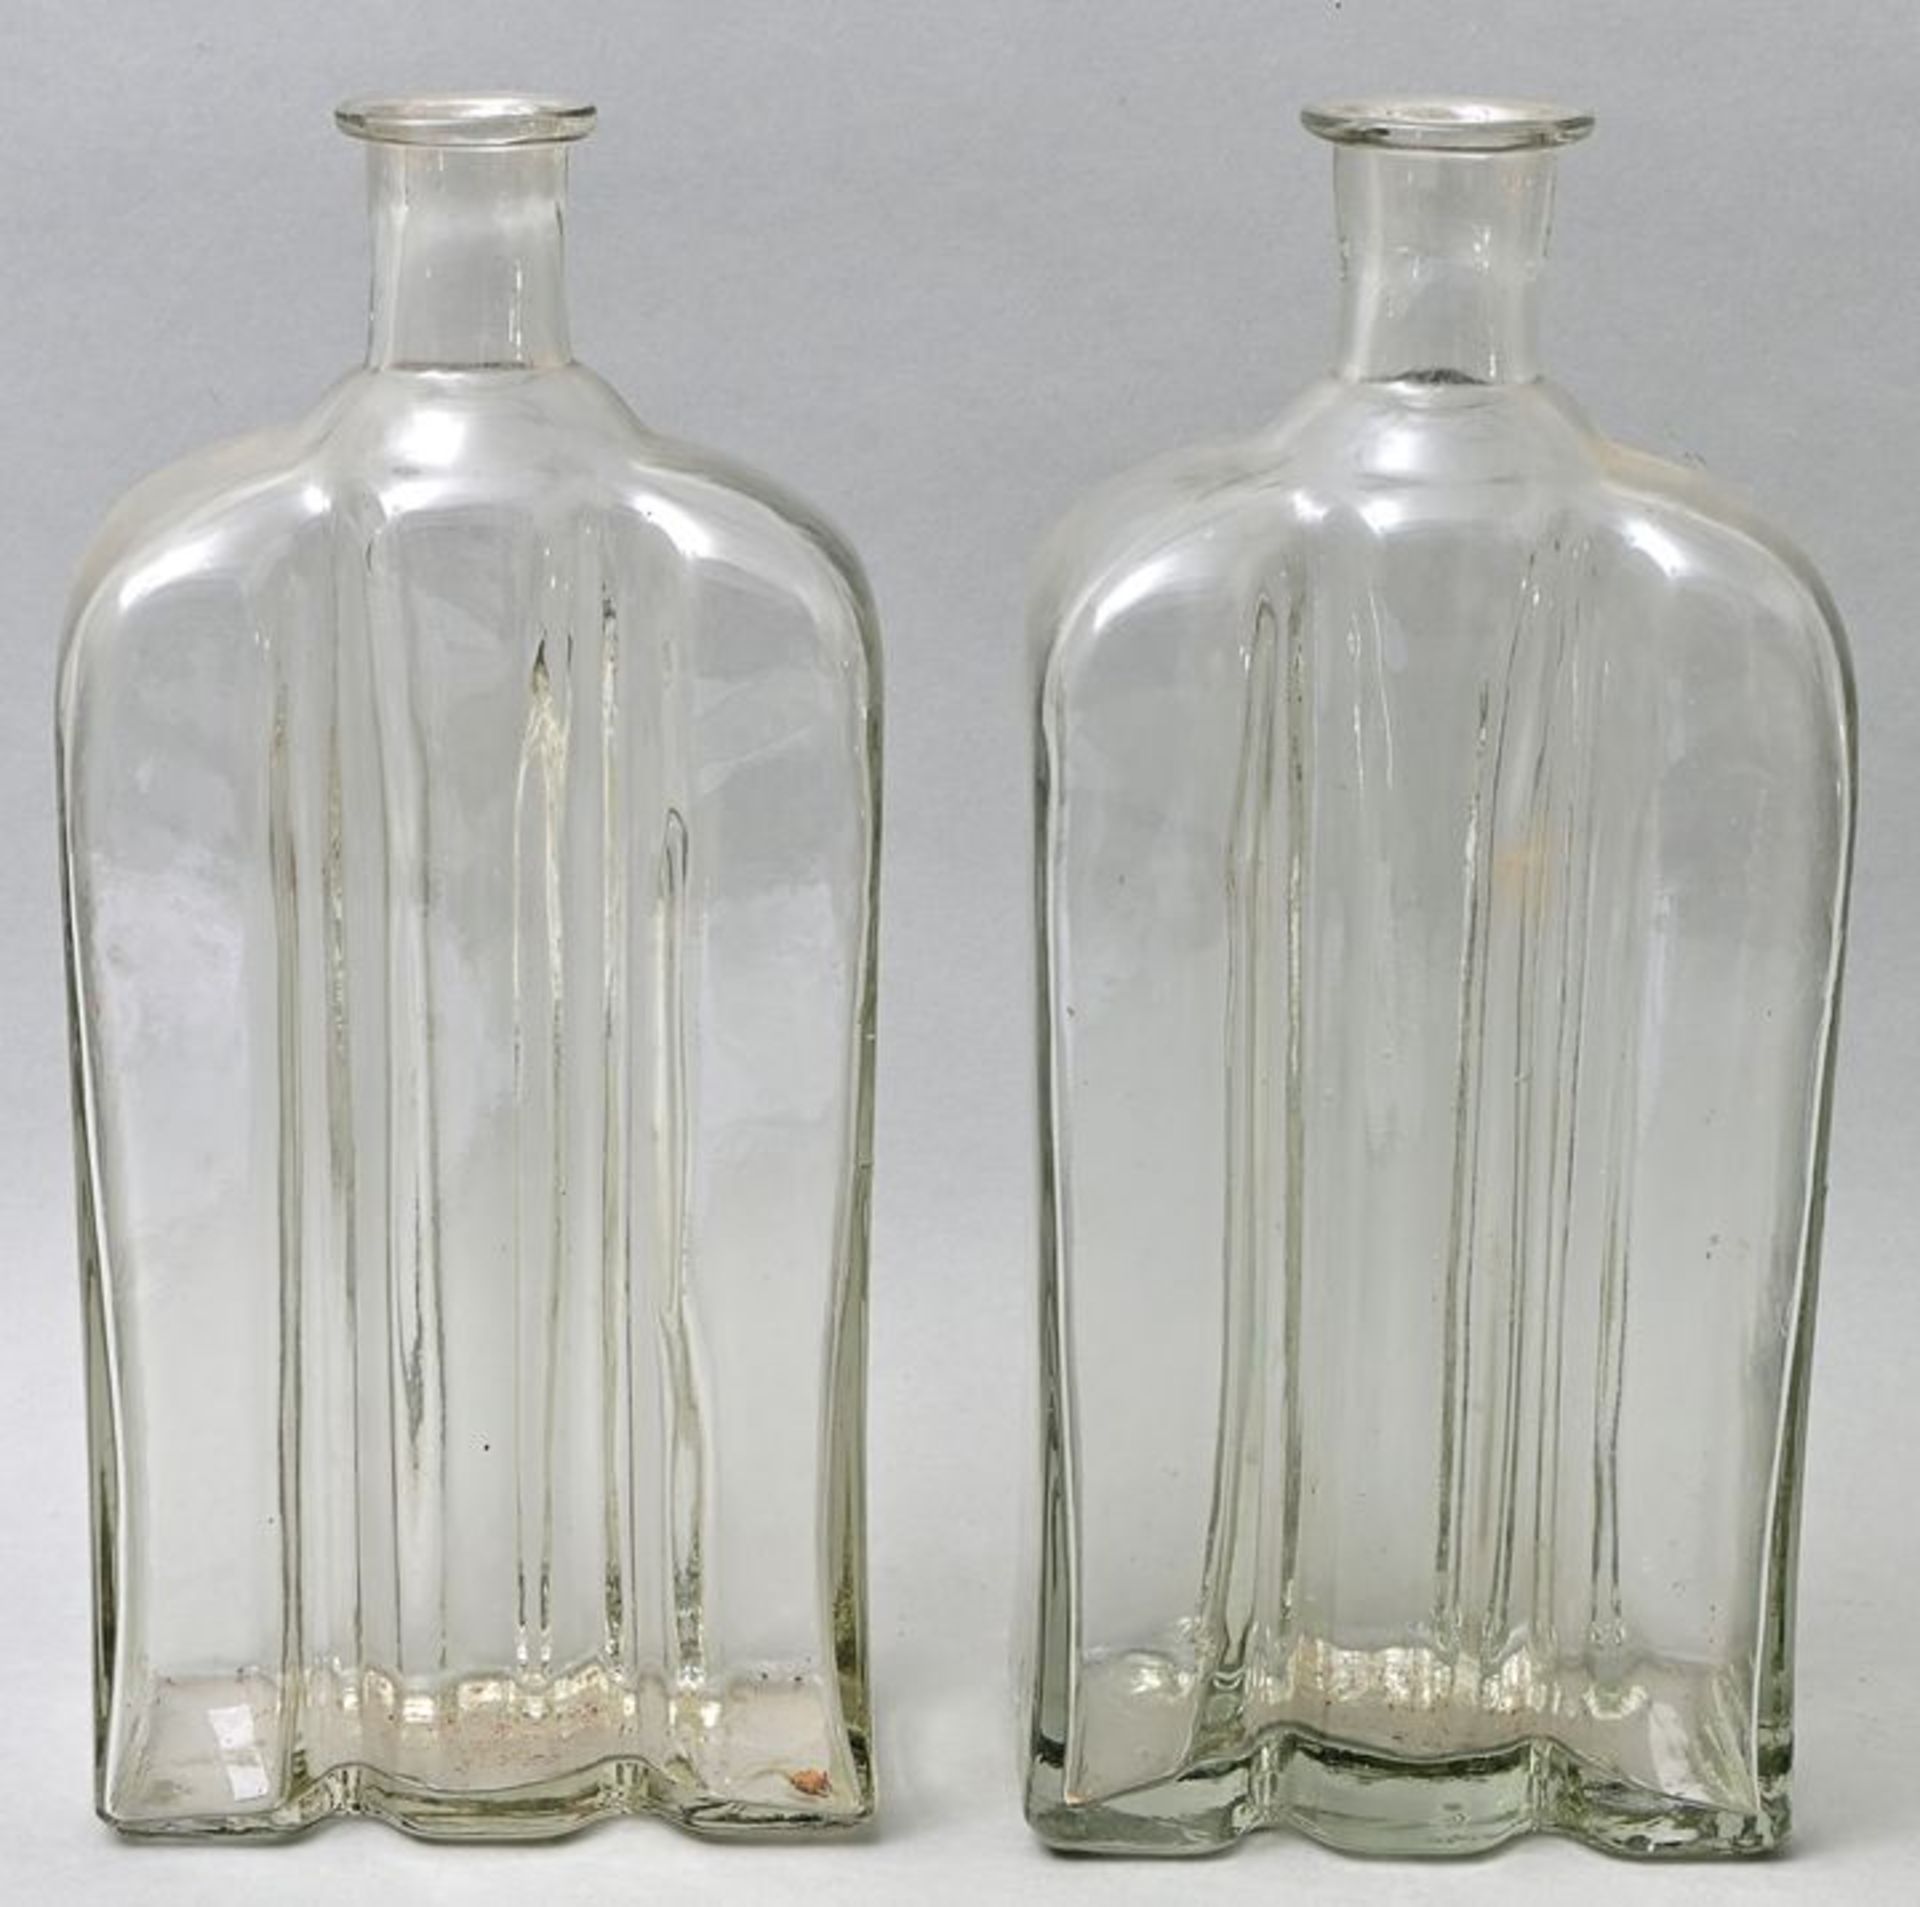 Paar Flaschen/ two bottles